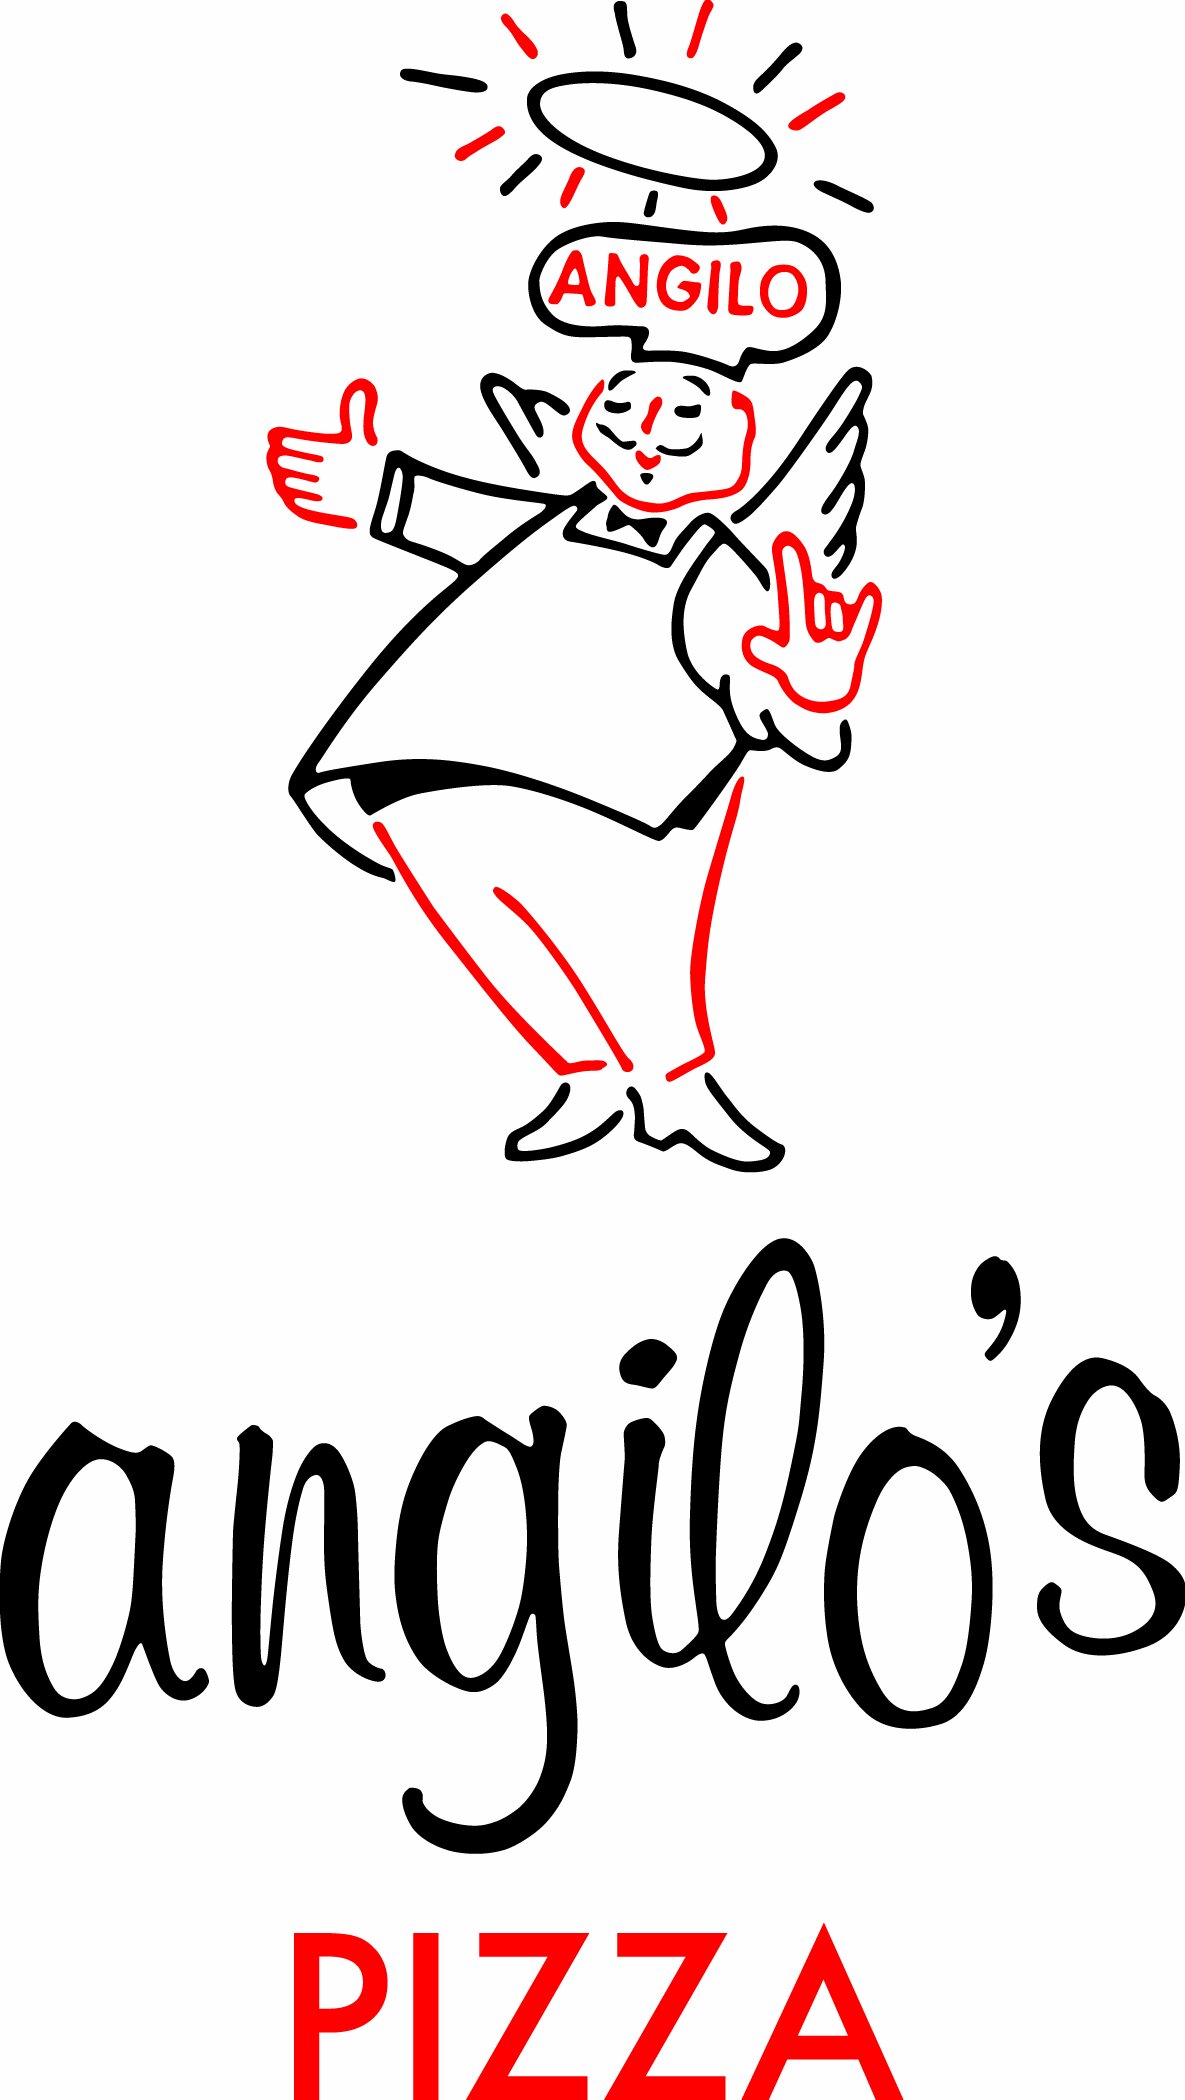 Angilo's Pizza and Hoagies